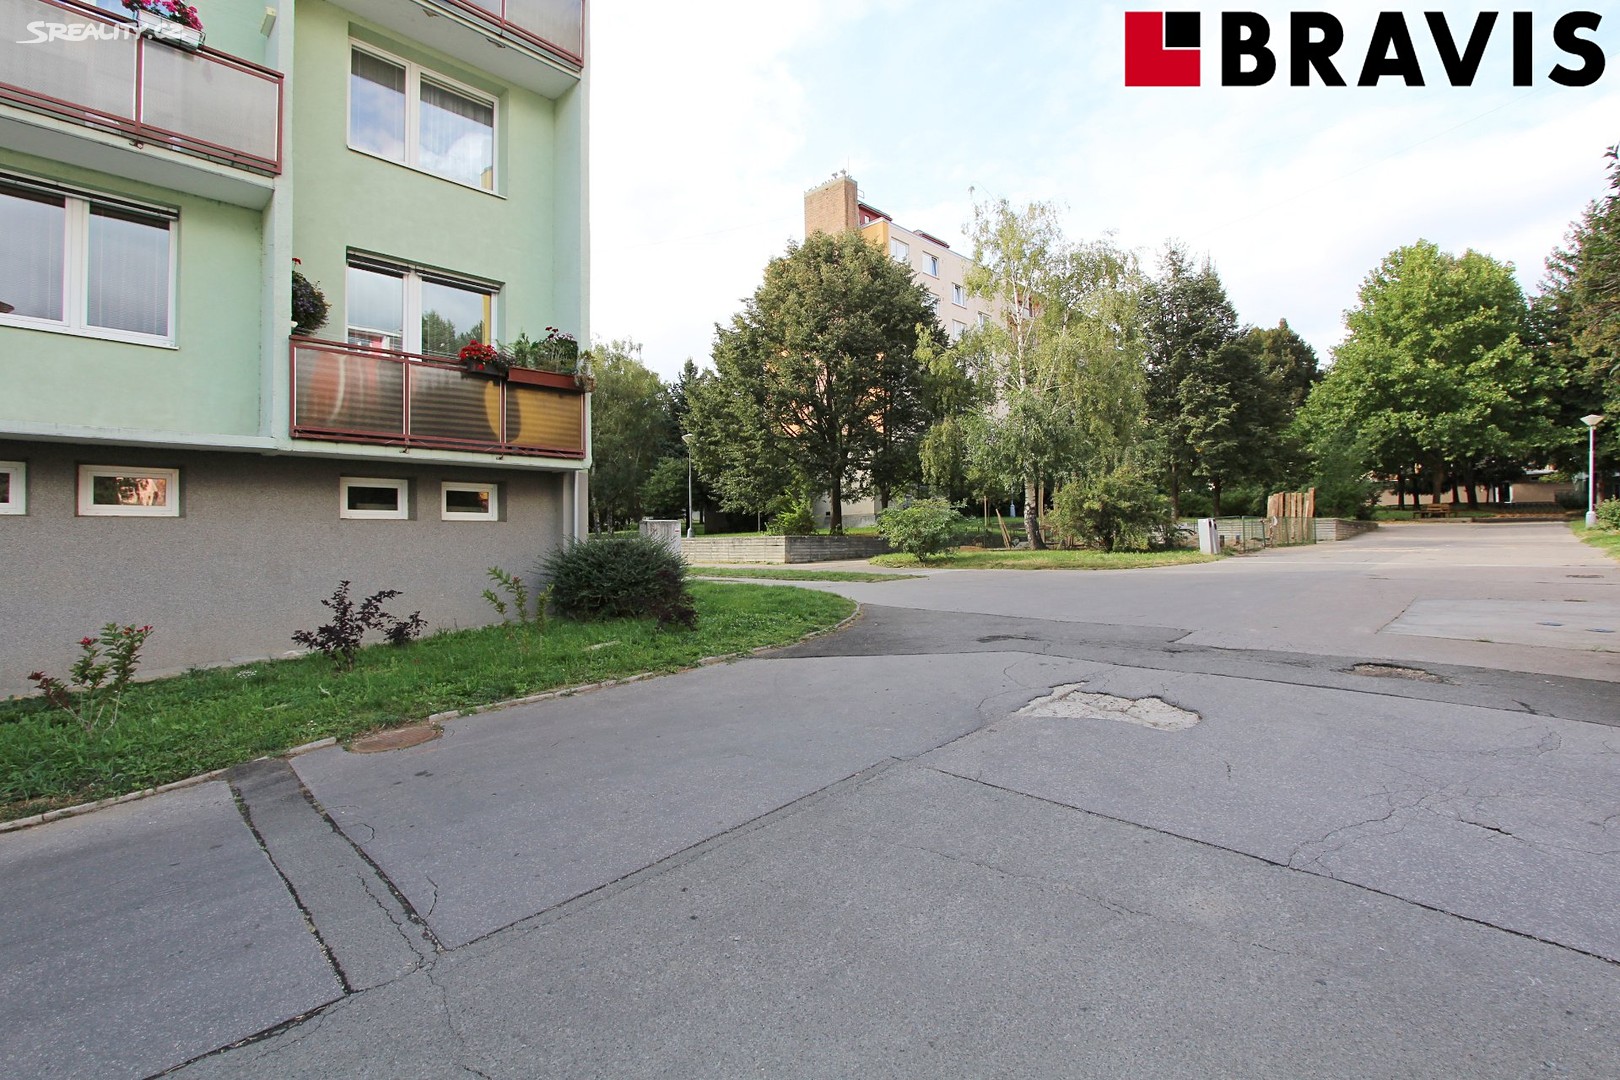 Pronájem bytu 1+1 33 m², Olbrachtovo náměstí, Brno - Komín